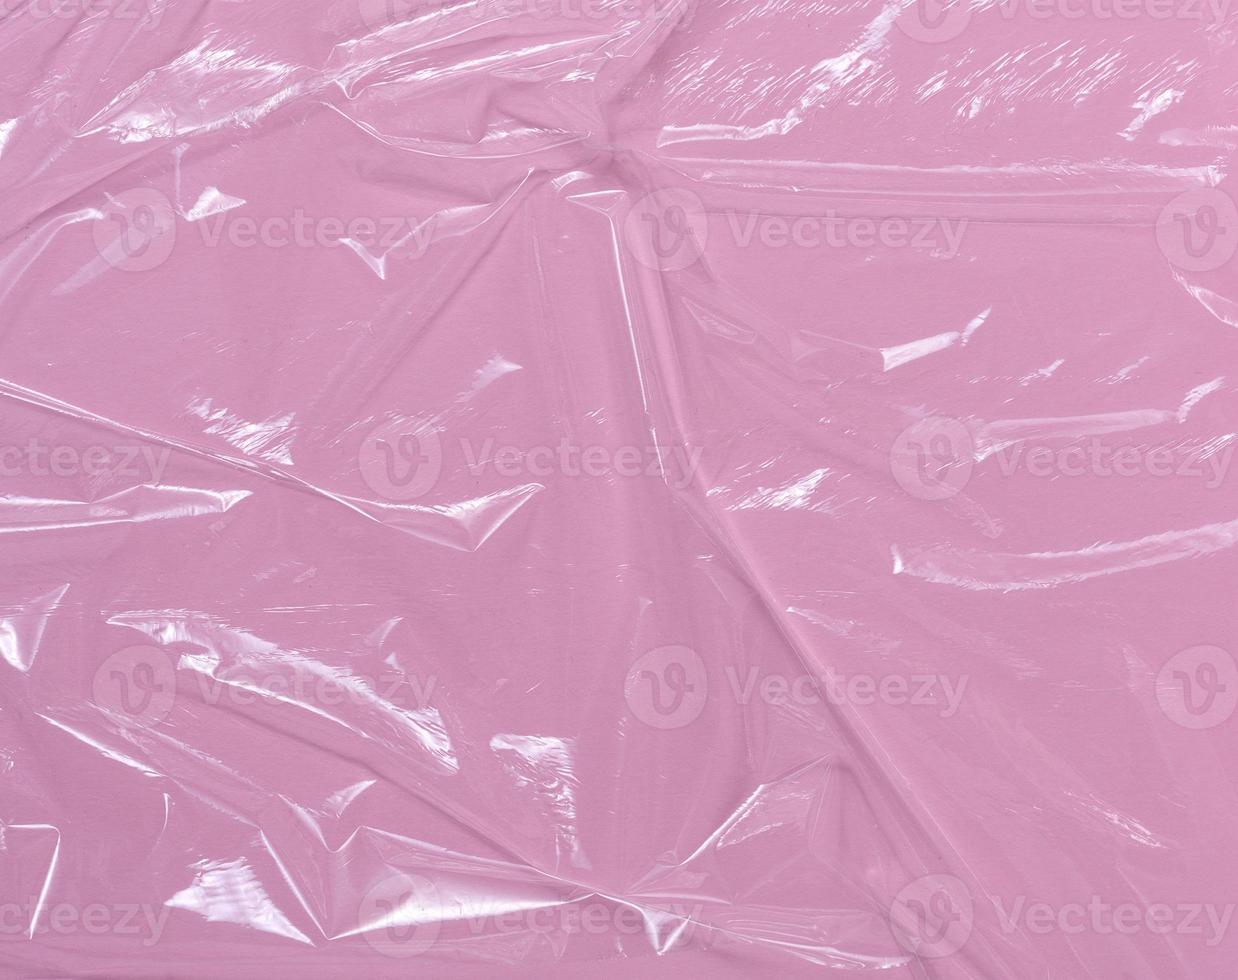 textura de polietileno transparente amassado em um fundo rosa, quadro completo. foto